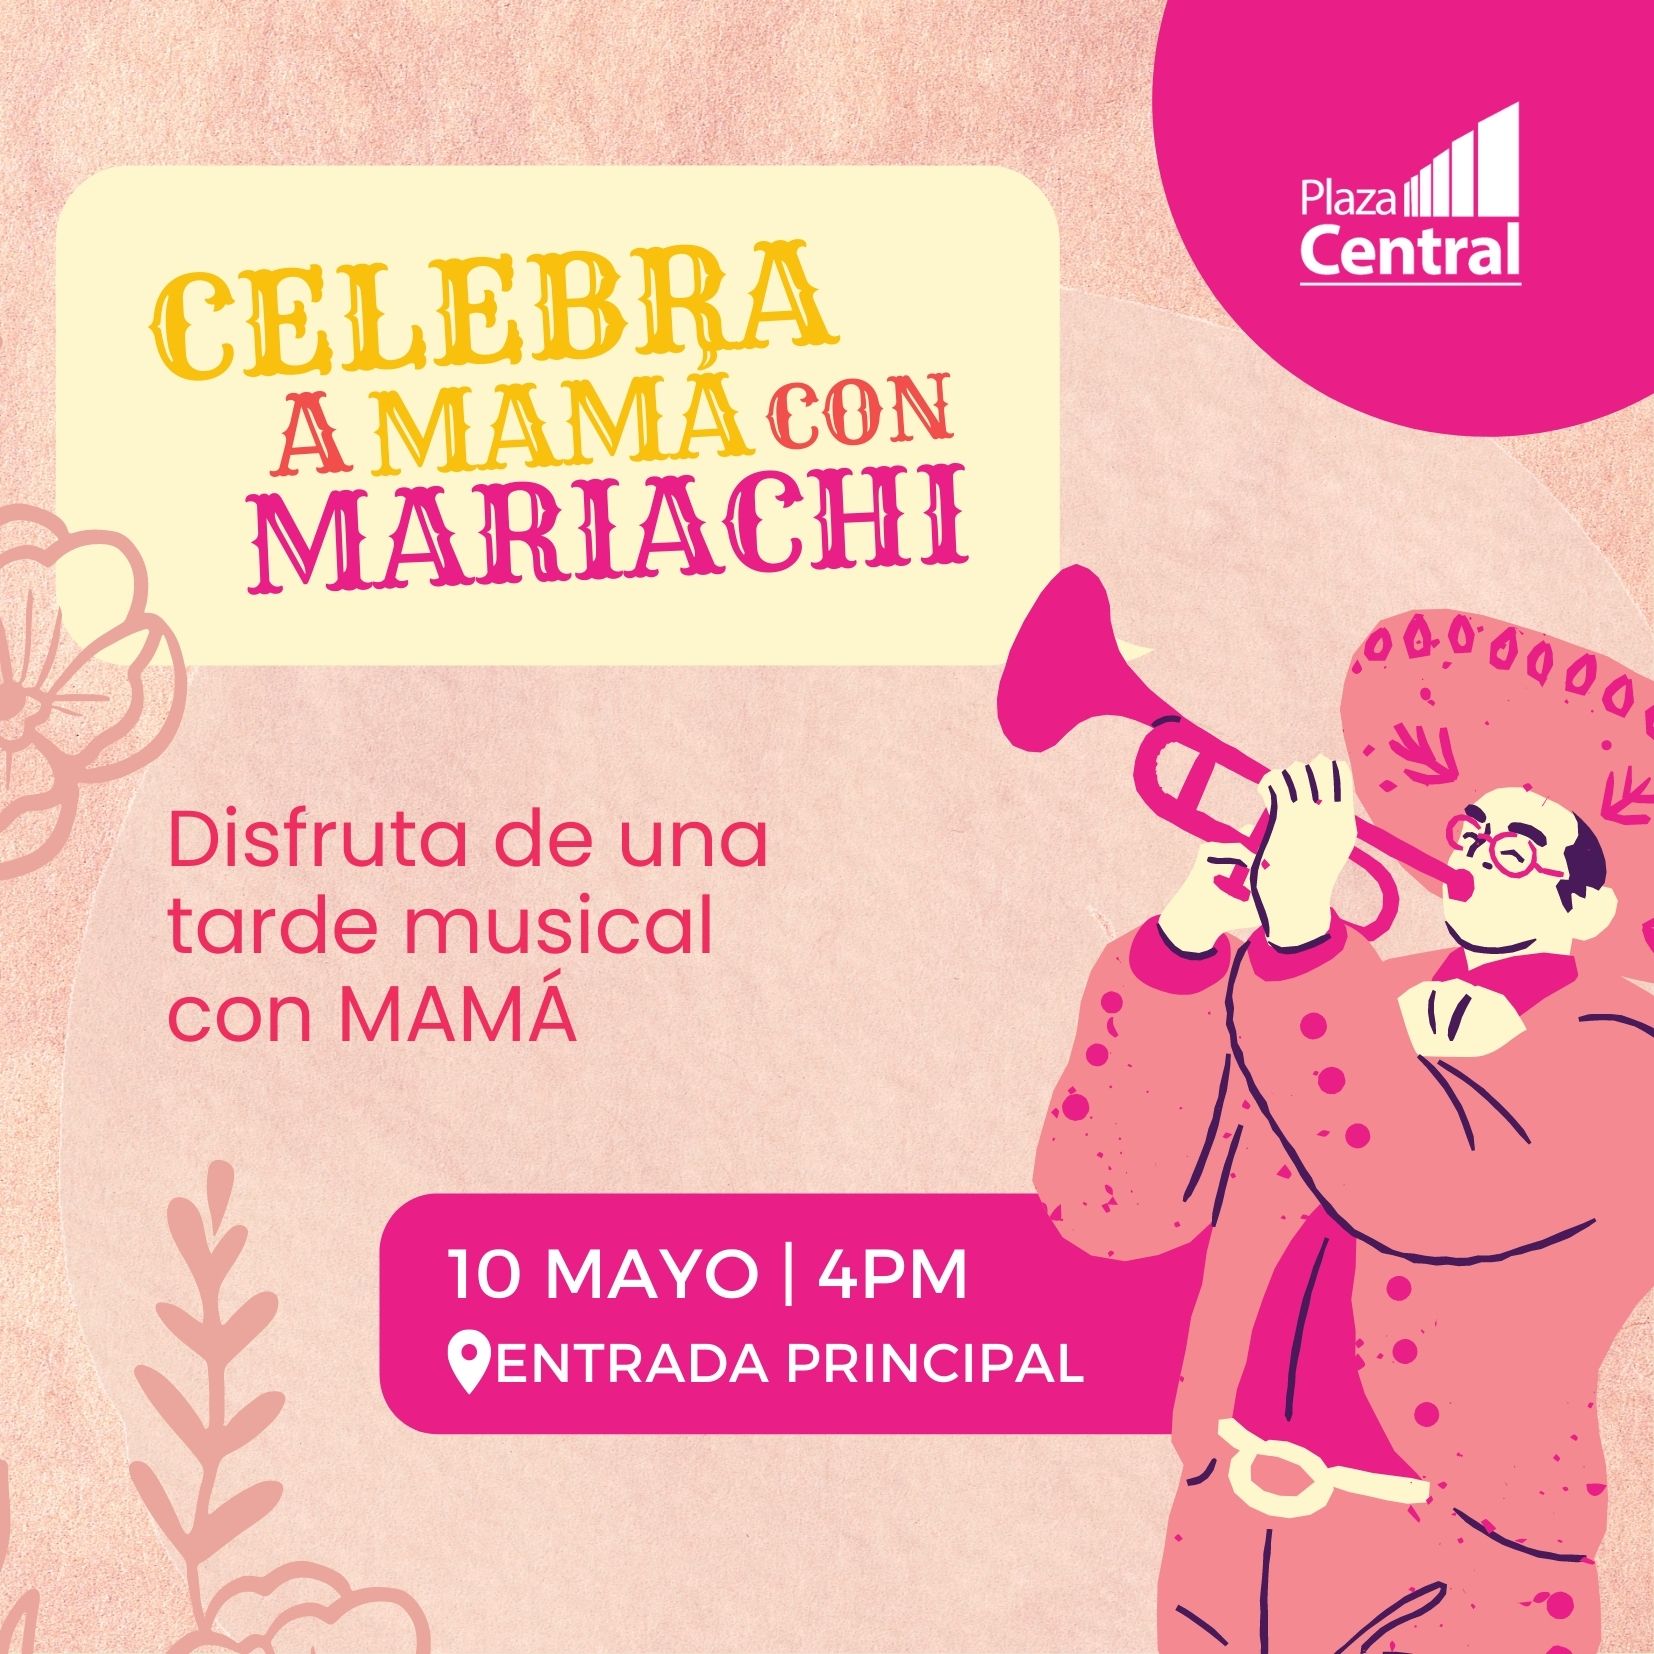 MIDTOWN Celebra a Mamá con Mariachi 